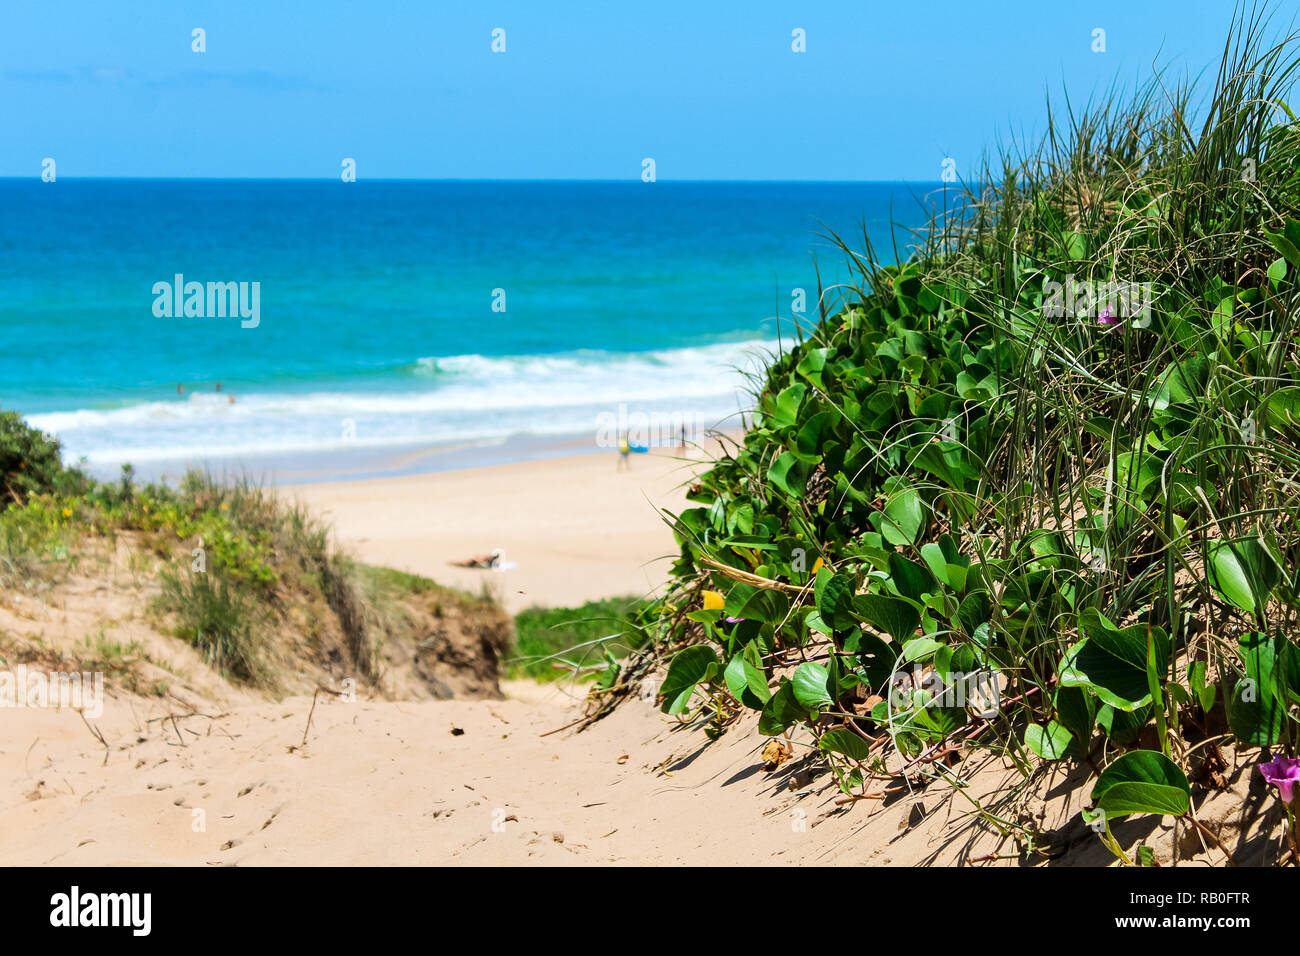 Plantes vertes et fleurs qui poussent sur les dunes de sable avec vue sur une plage pendant une journée d'été avec un ciel clair et bleu de l'eau (Parc National de Noosa, Australie) Banque D'Images